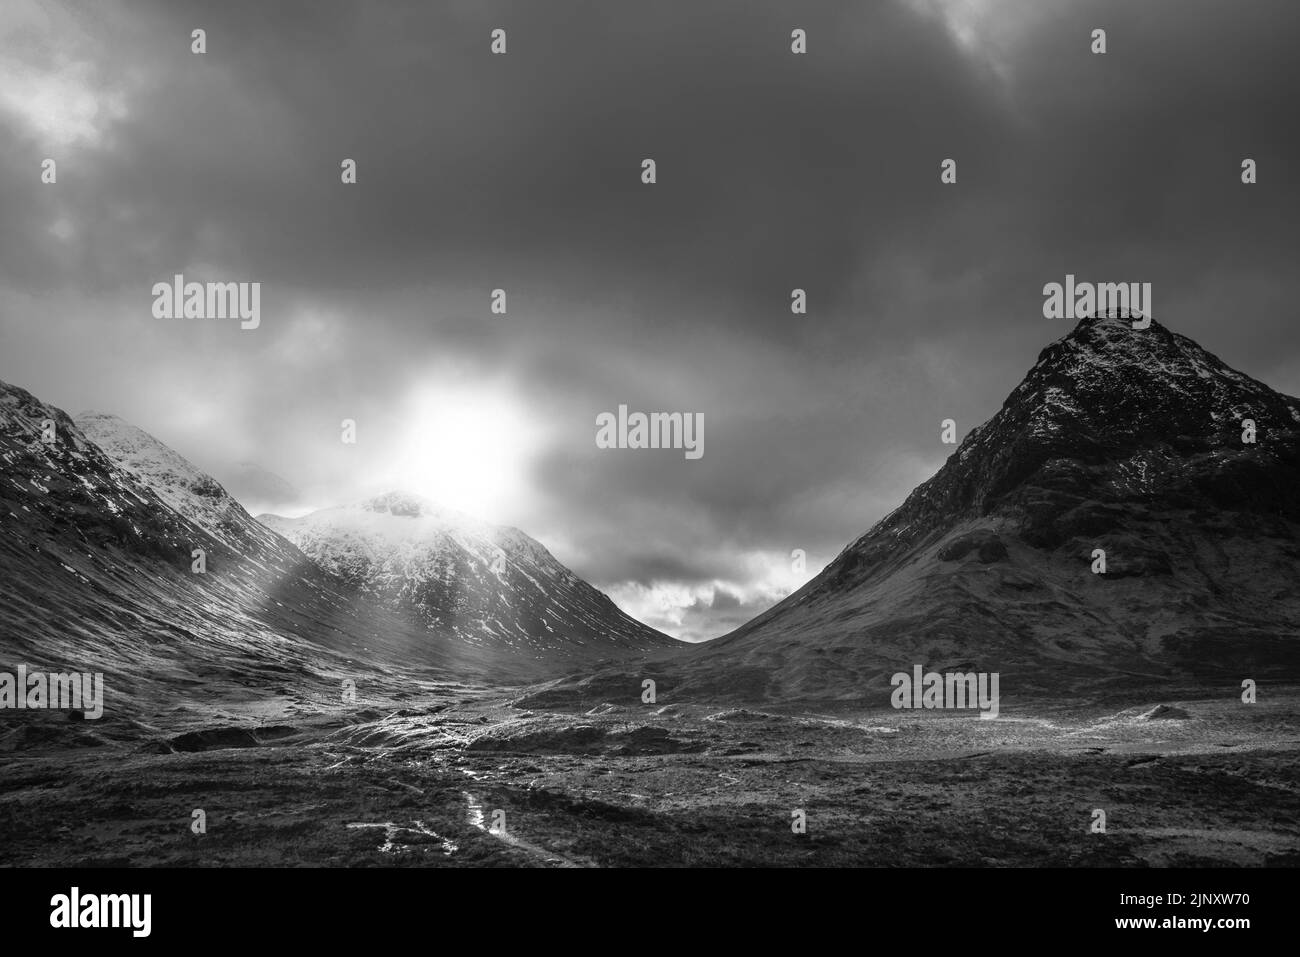 Image de paysage Epic Winter en noir et blanc d'Etive Mor dans les Highlands écossais avec des rayons de soleil coulants entre les sommets Banque D'Images